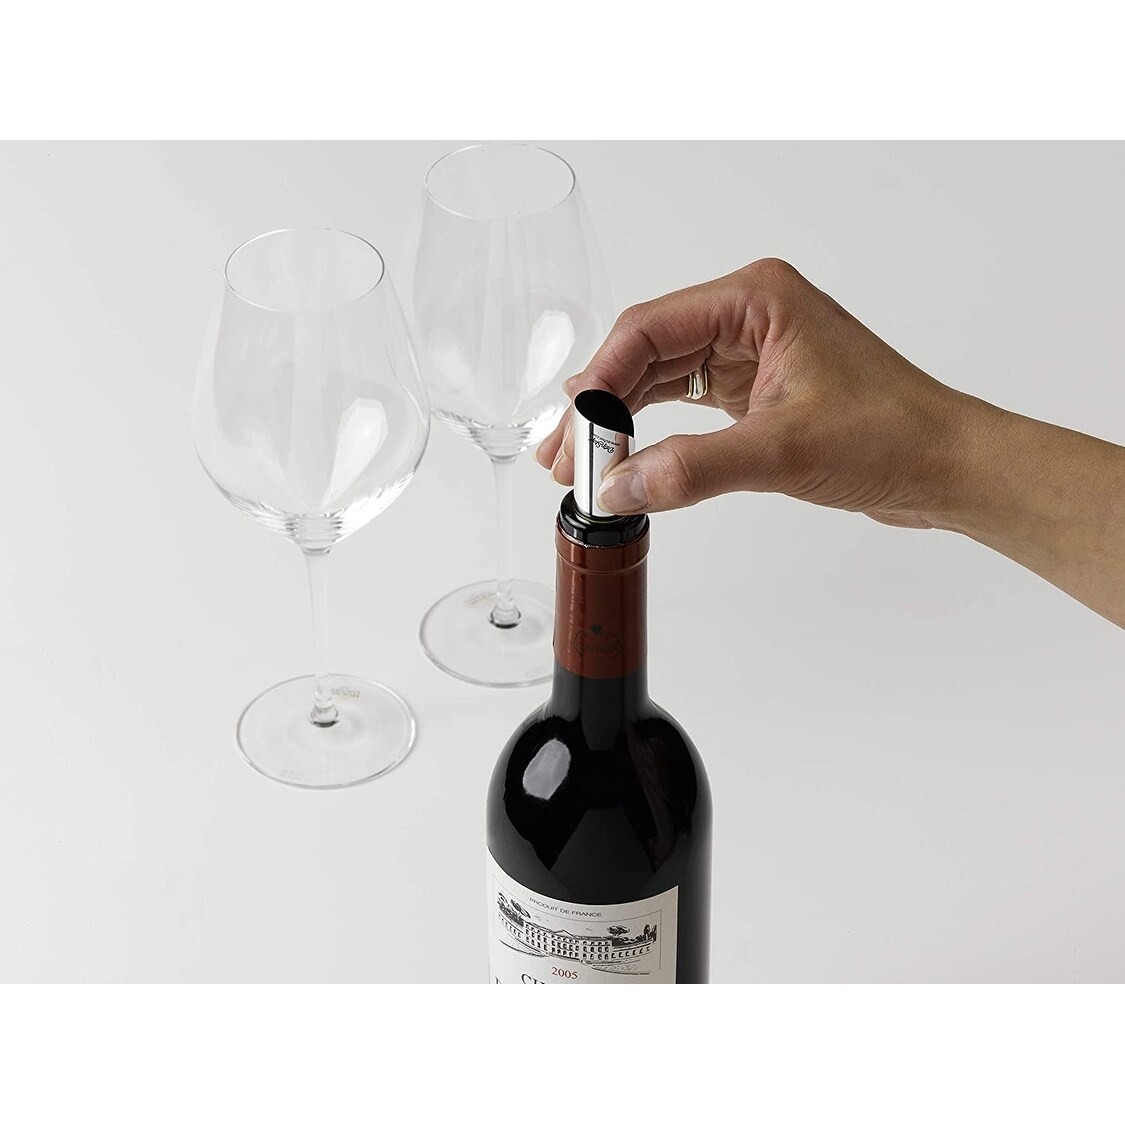 DropStop: The Original Wine Pour Spout